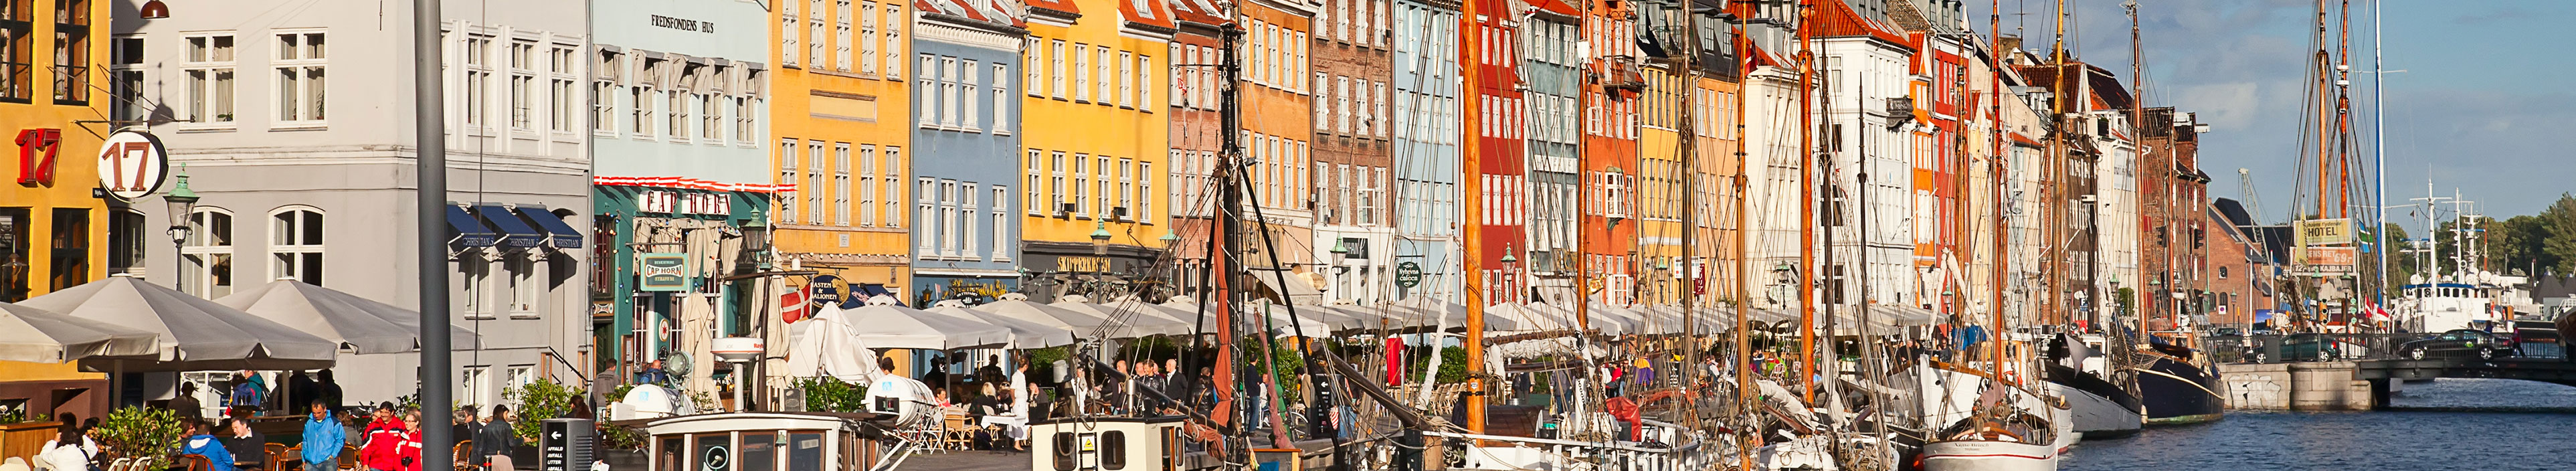 Nyhavn in Kopenhagen in Dänemark